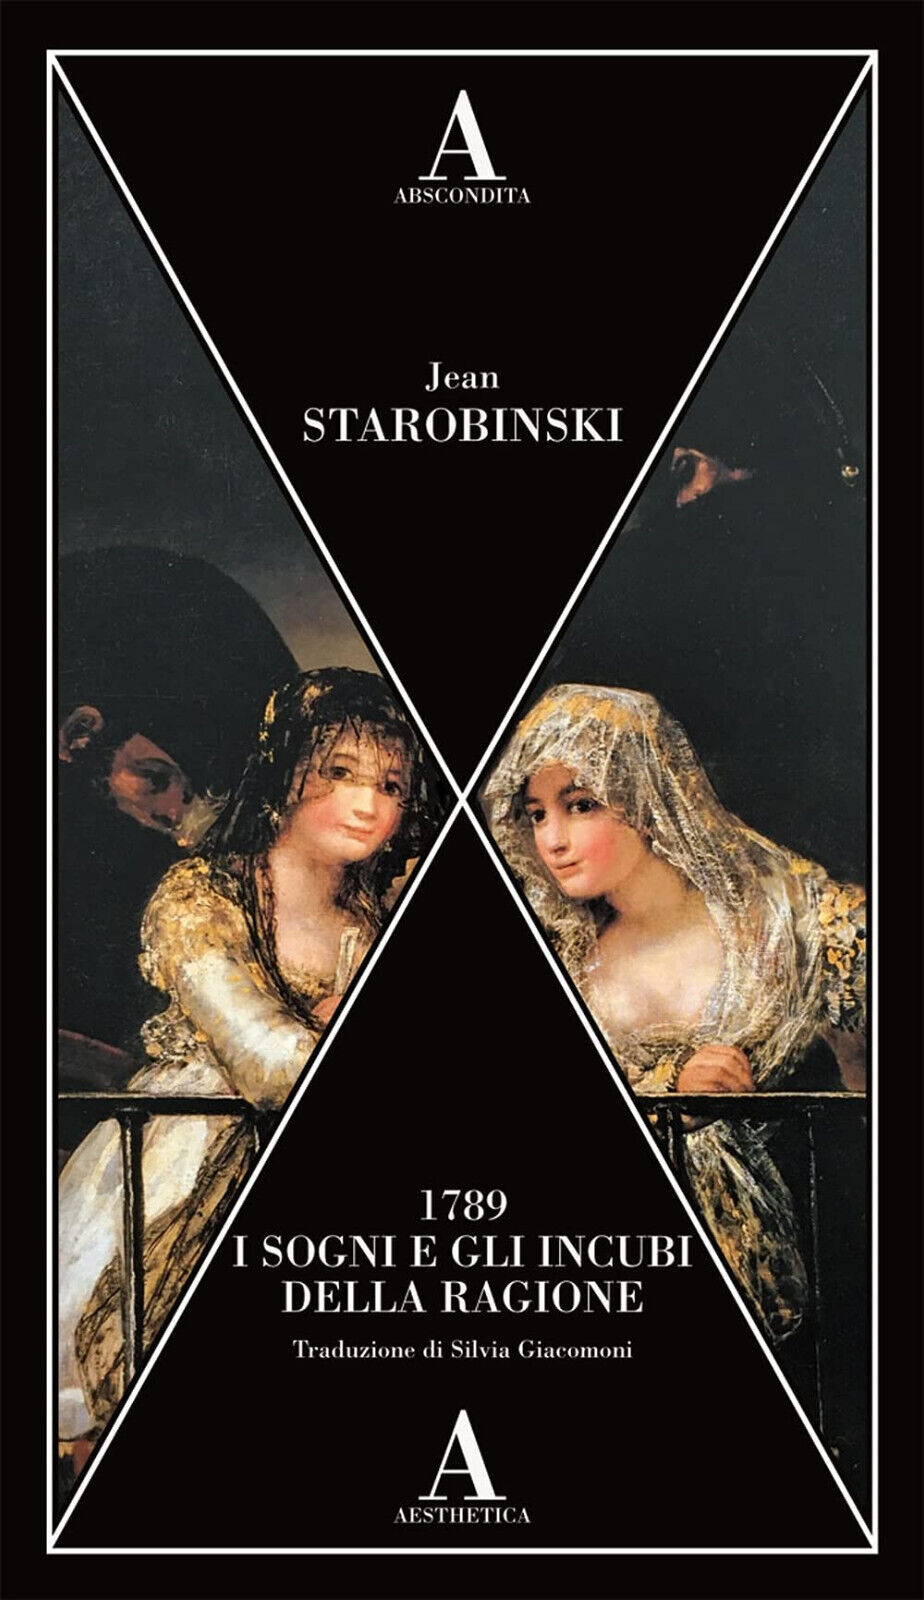 1789, i sogni e gli incubi della ragione - Jean Starobinski - Abscondita, 2021